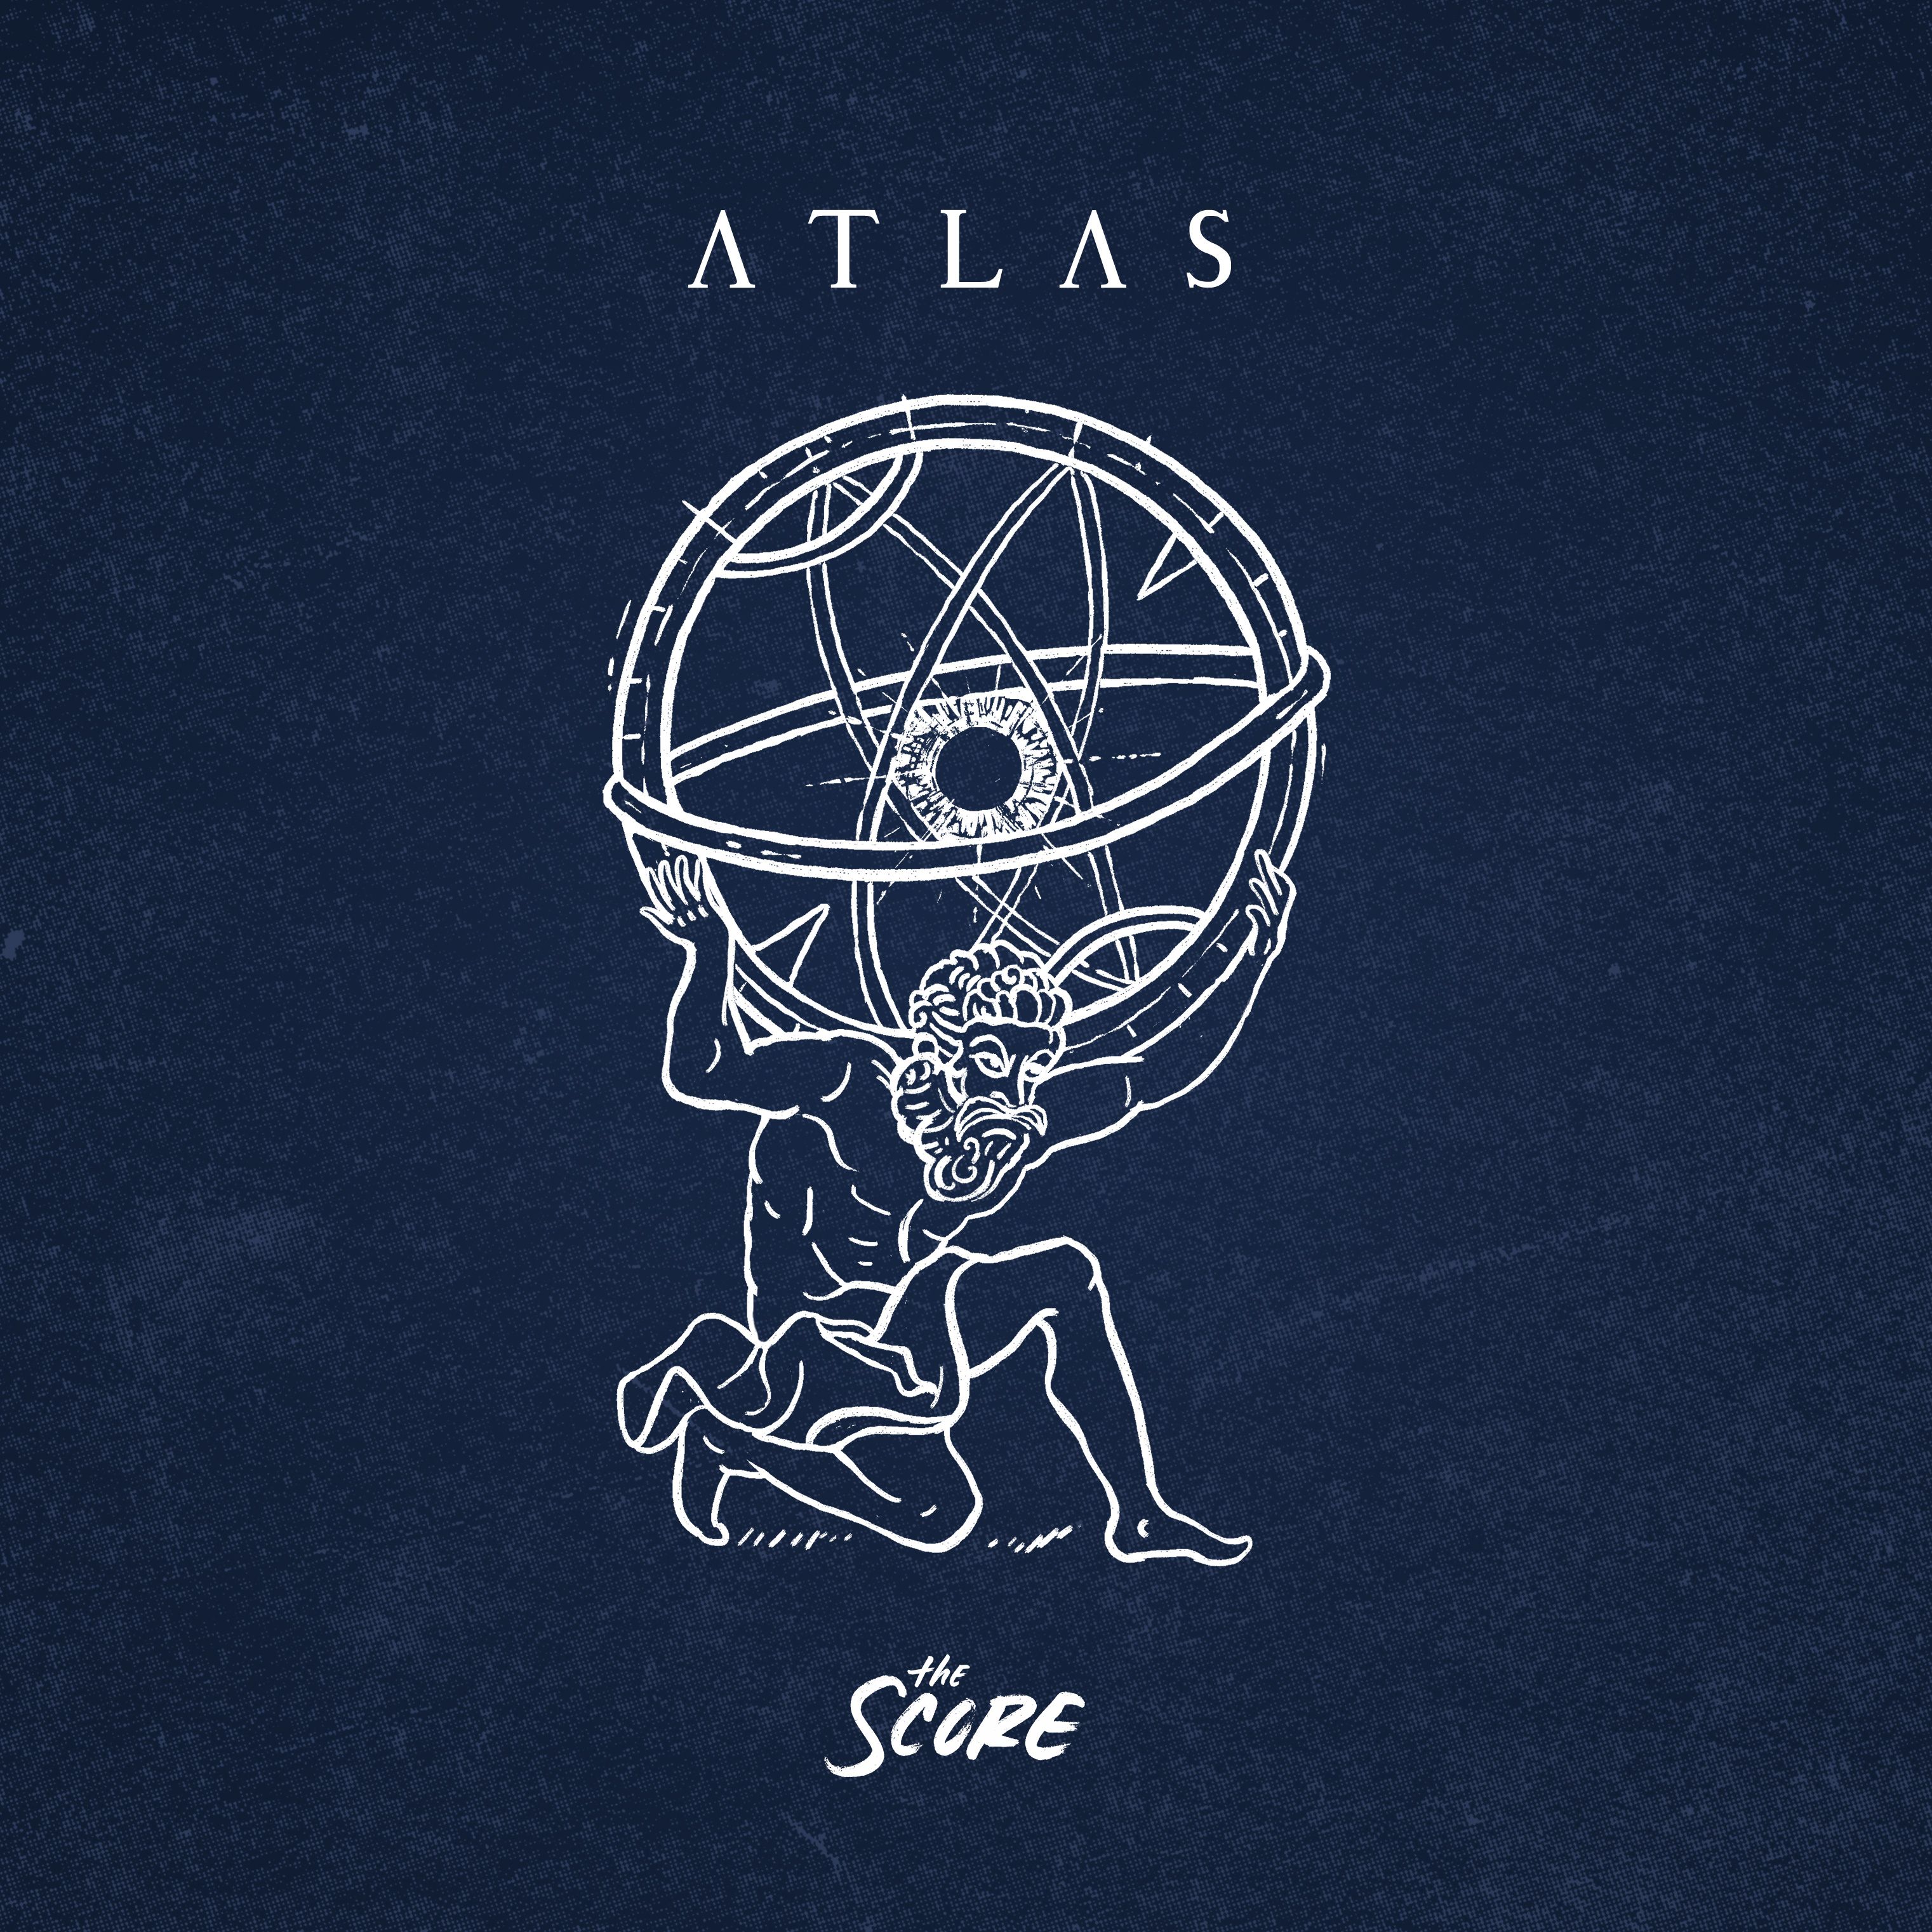 The Score 'ATLAS'. Republic Album Art. Music